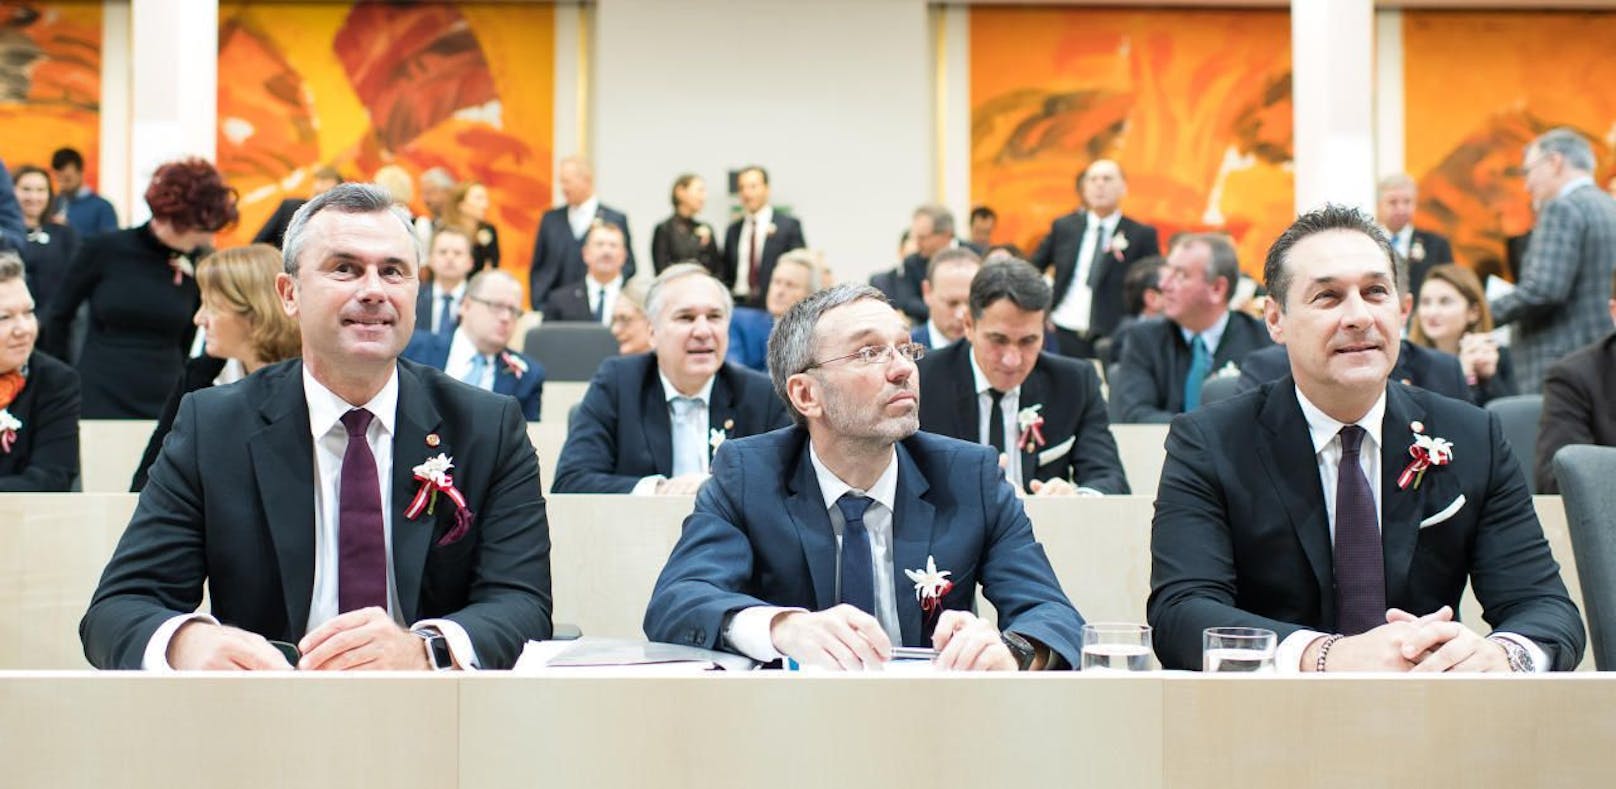 Die FPÖ kam statt mit blauer Kornblume mit dem Edelweiß im Knopfloch (im Bild (v.l.n.r.: Norbert Hofer, Herbert Kickl, Heinz-Christian Strache)